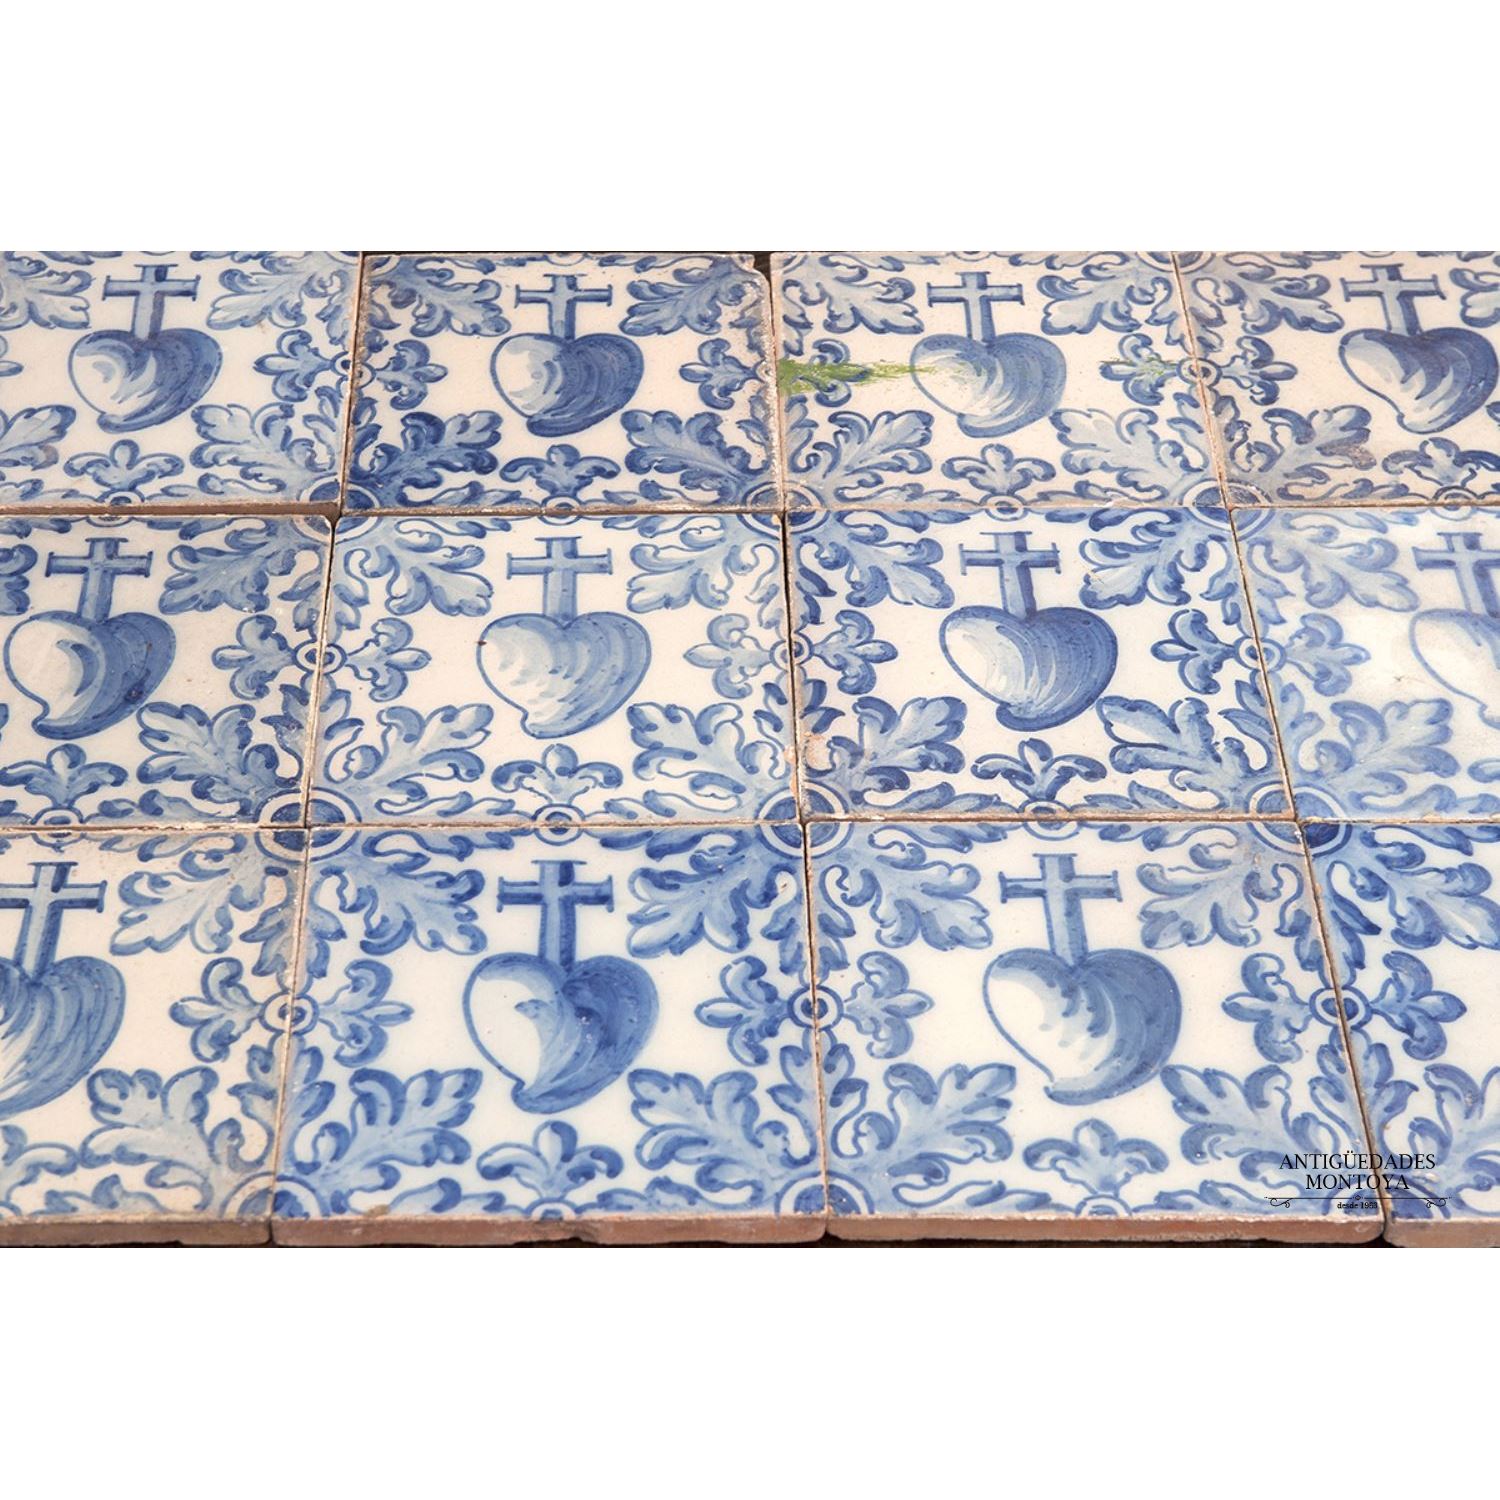 Conjunto de azulejos valencianos, S. XVII.